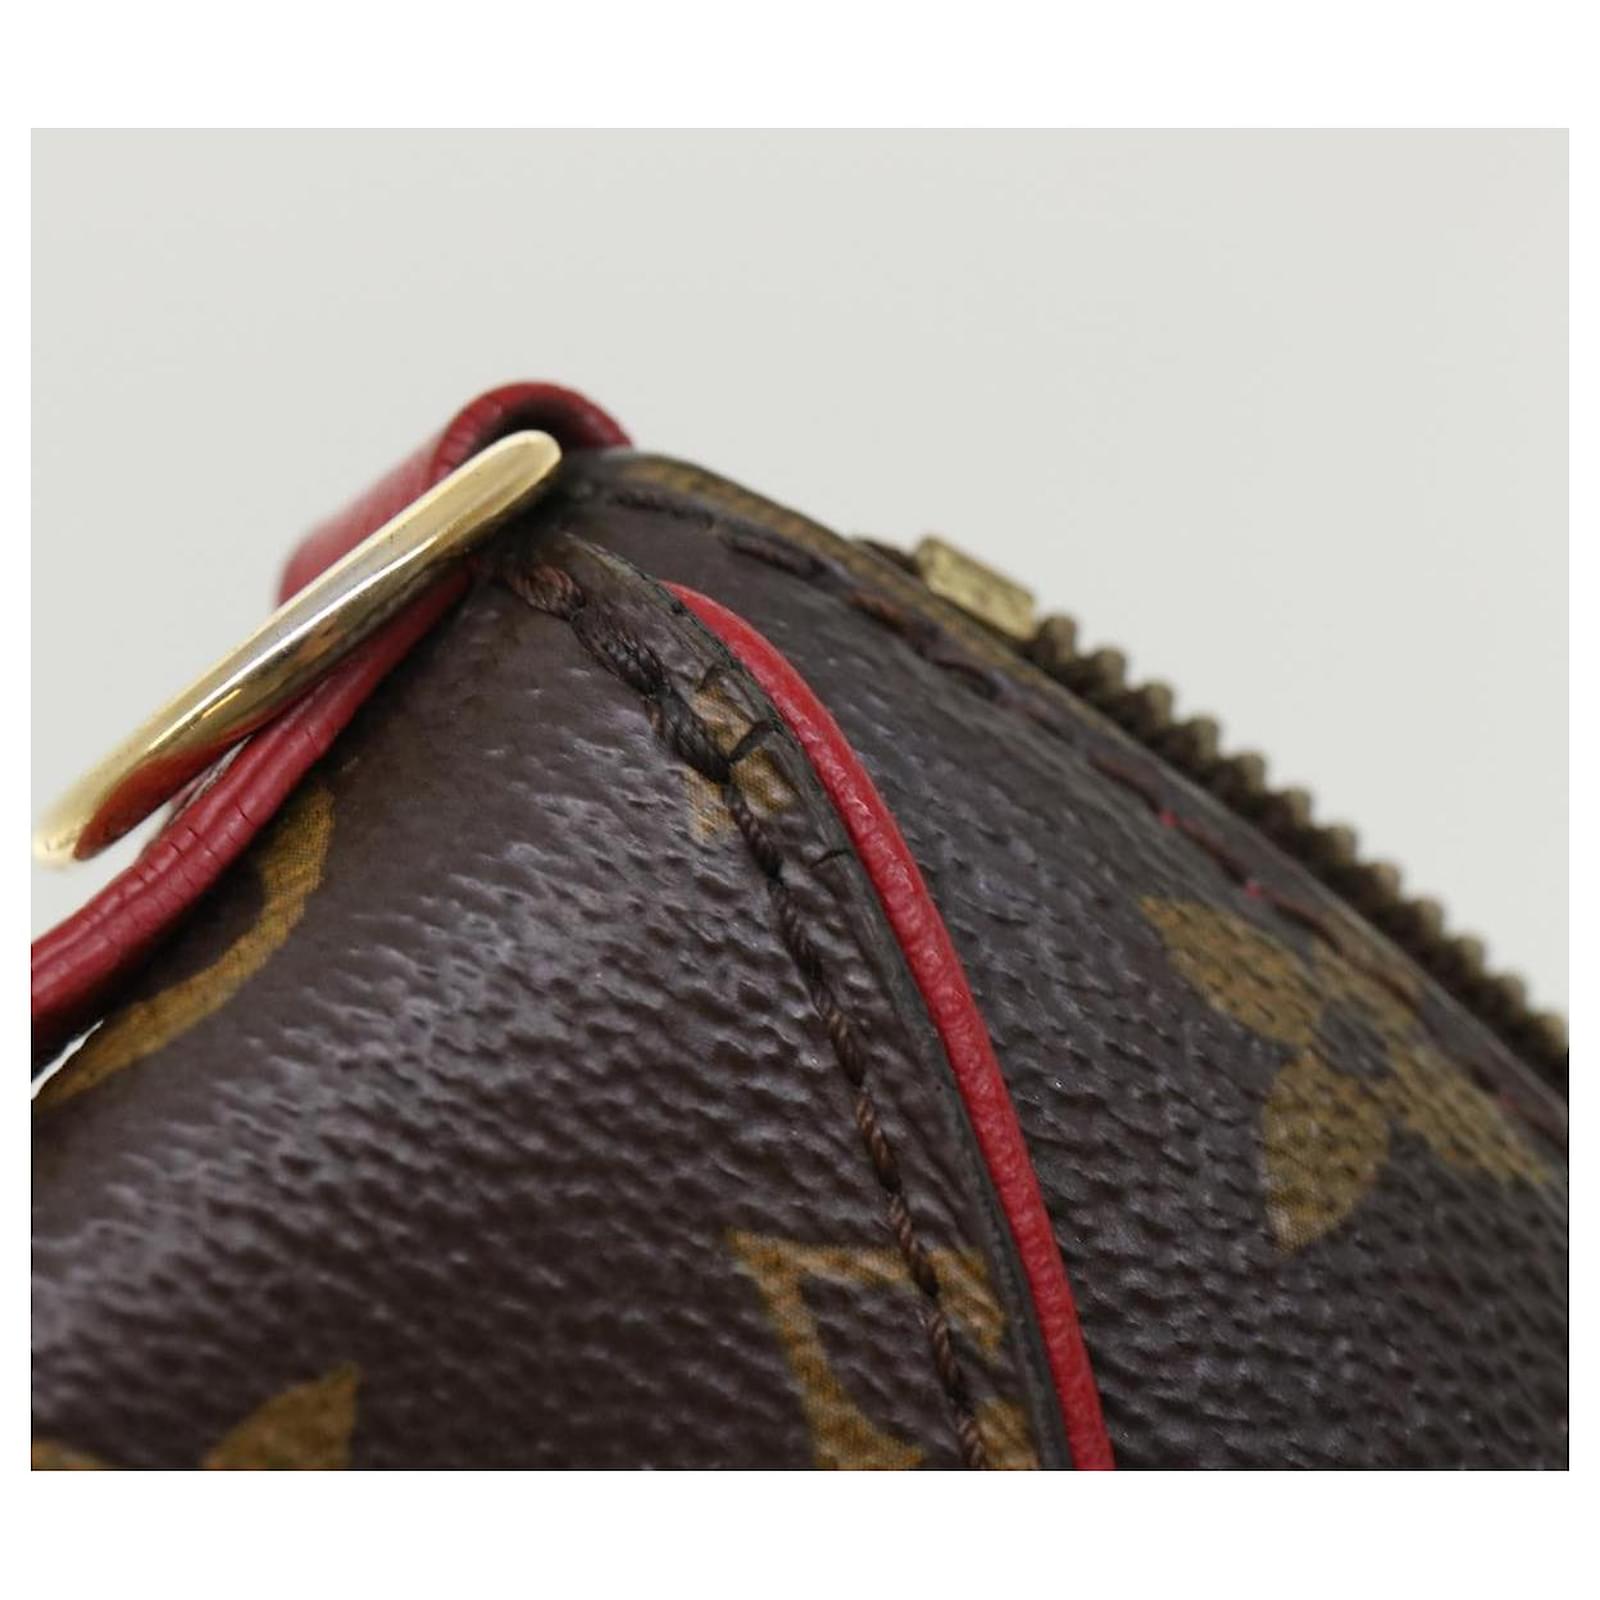 Louis Vuitton Handtasche, M44027 Monogram Tournelle PM braun/rot